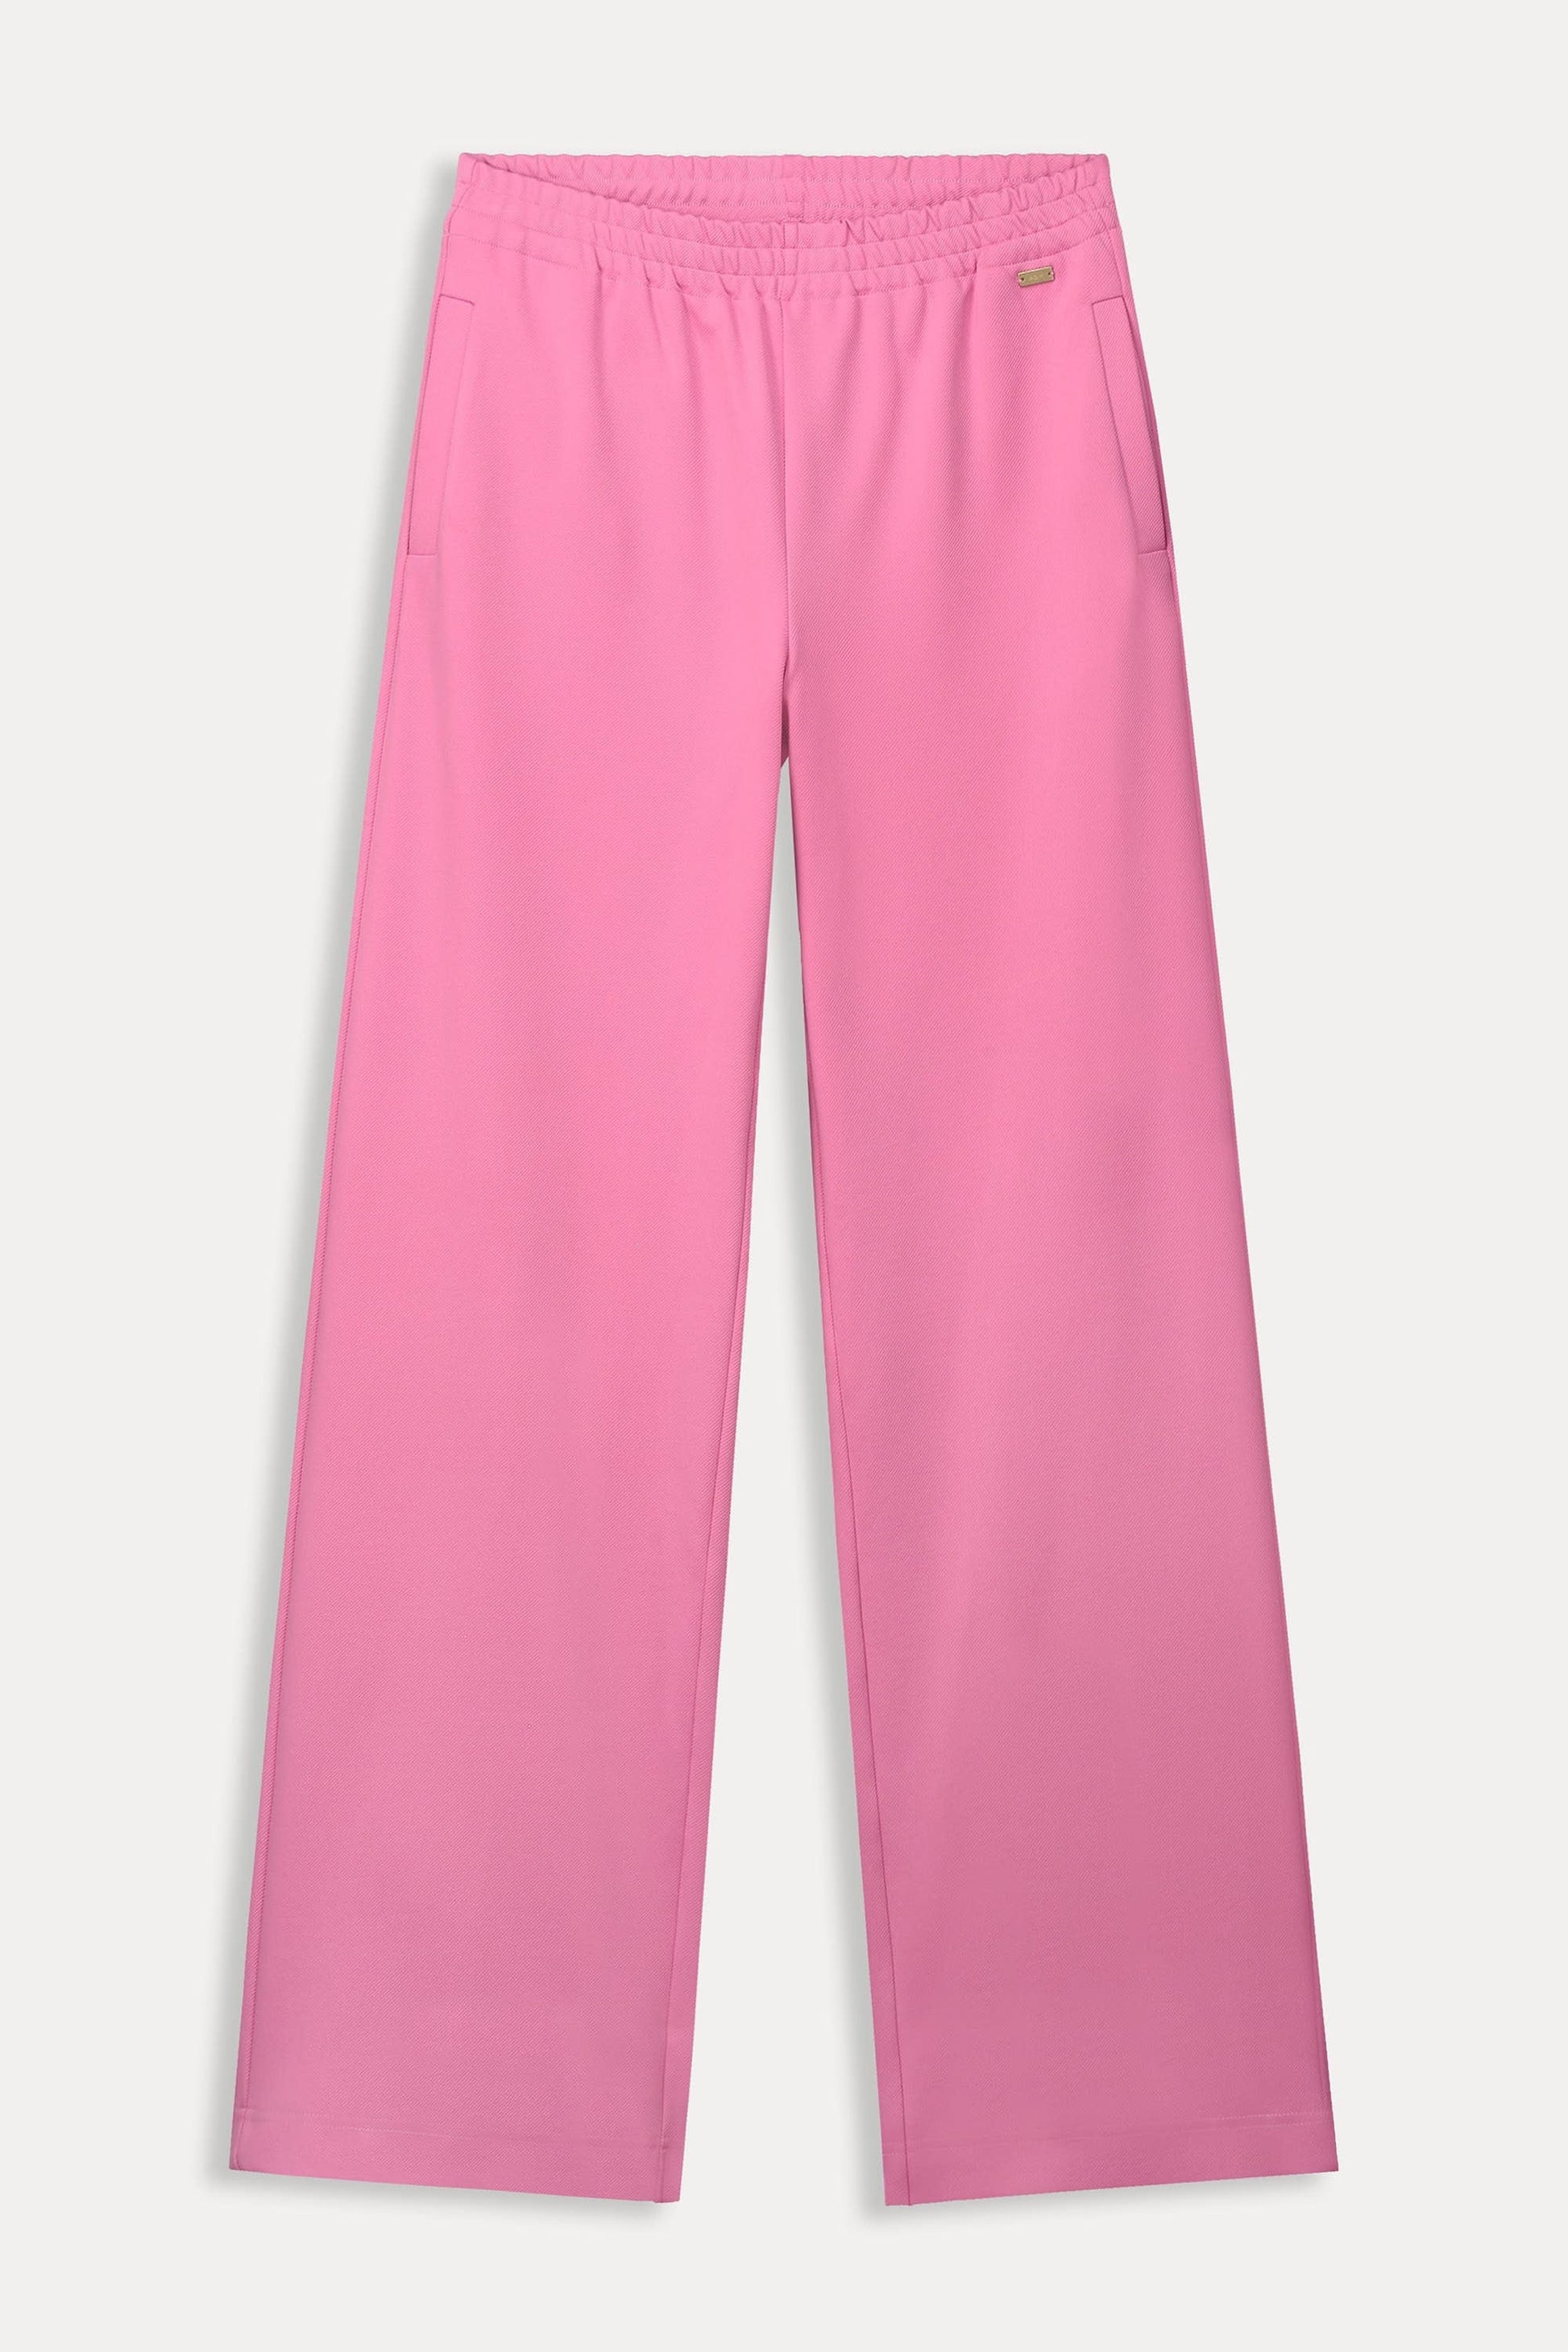 POM Amsterdam Pants BROEK - Blooming Pink